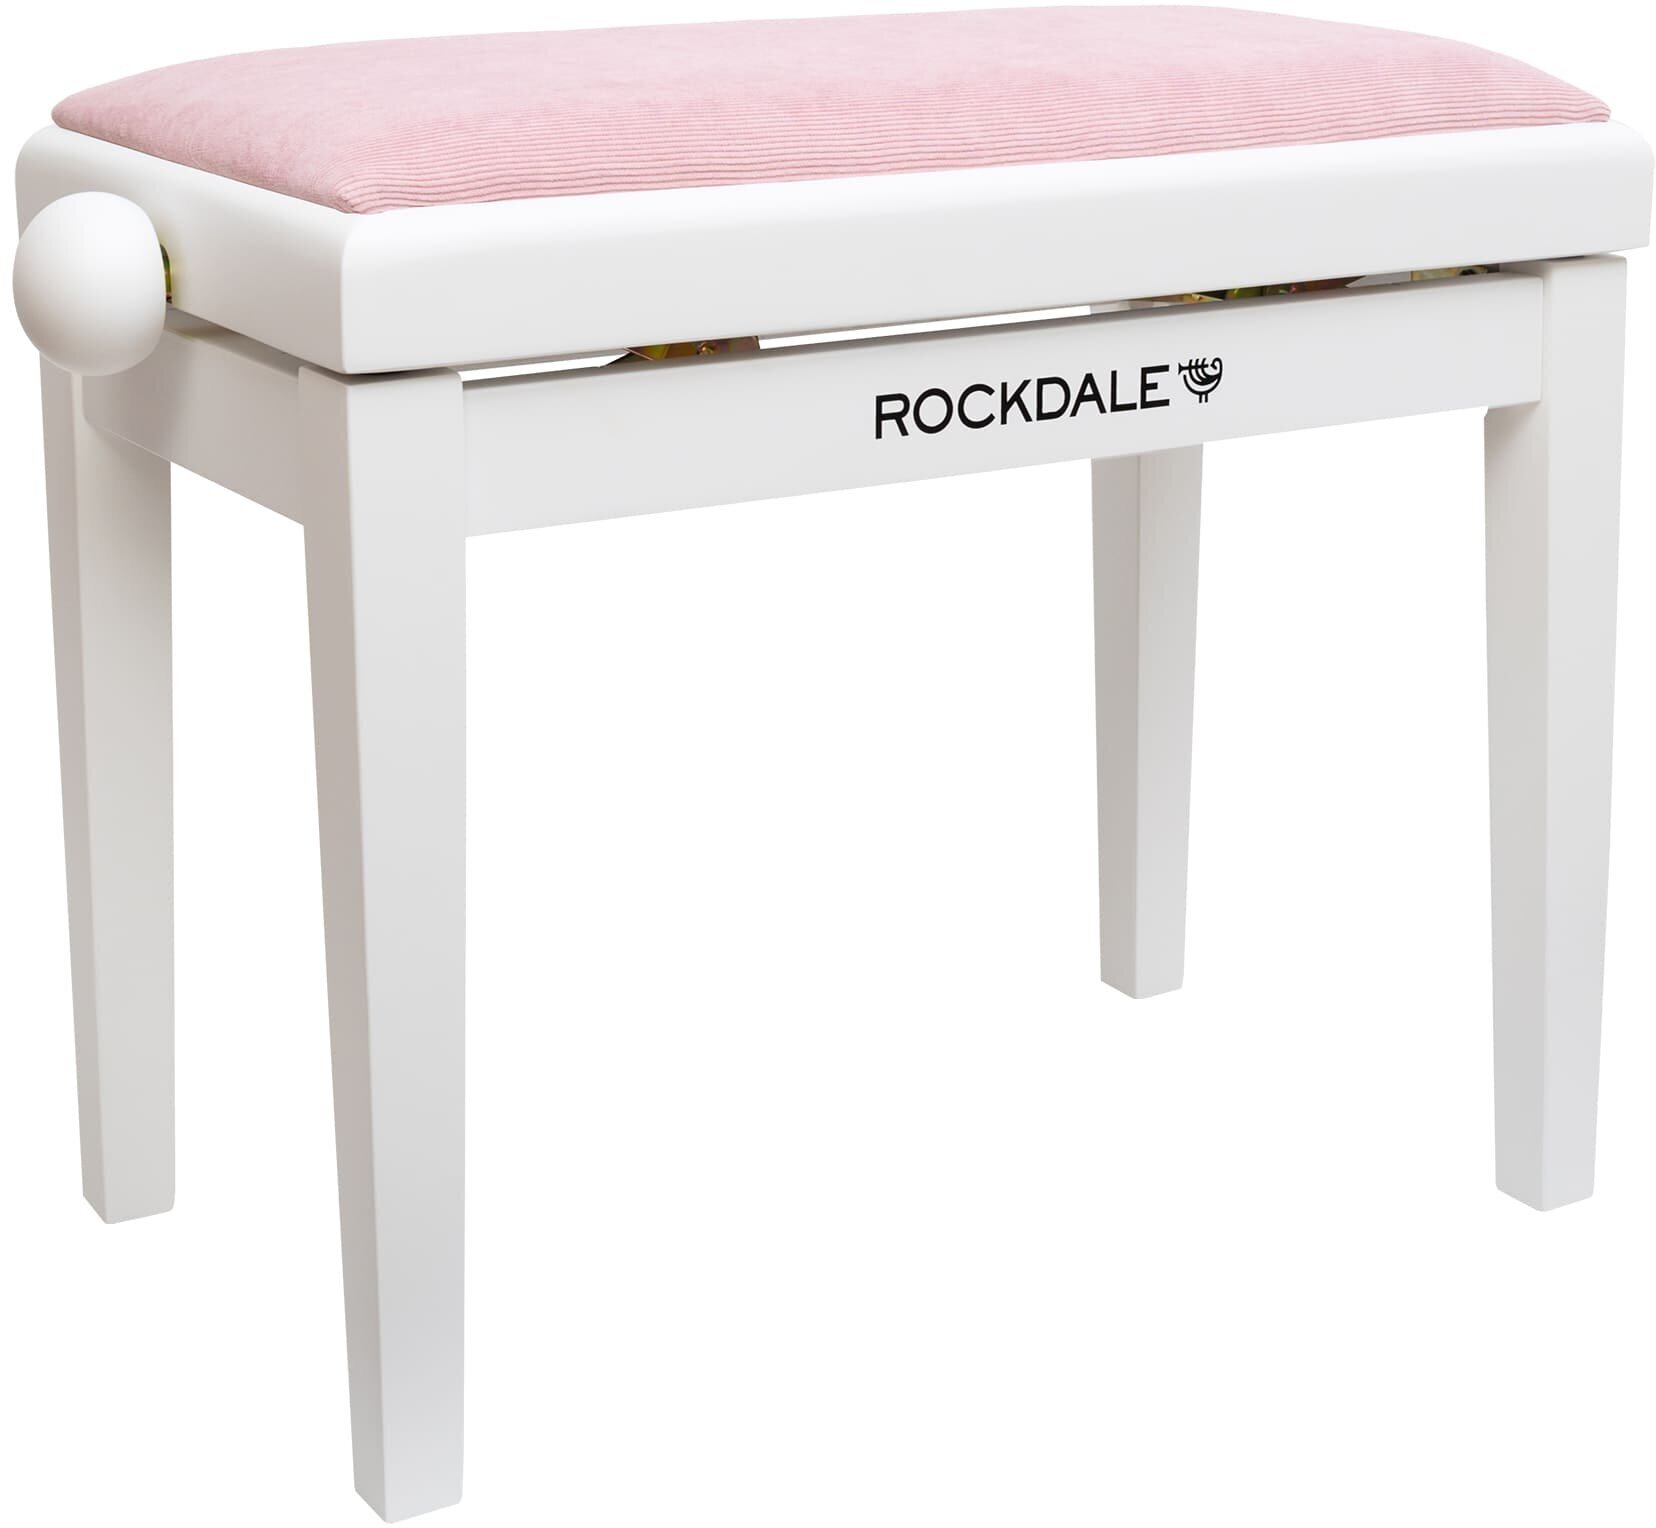 Rockdale Rhapsody 131 SV White Pink деревянная банкетка с регулировкой высоты, цвет корпуса белый, сиденье вельвет в рубчик розовый